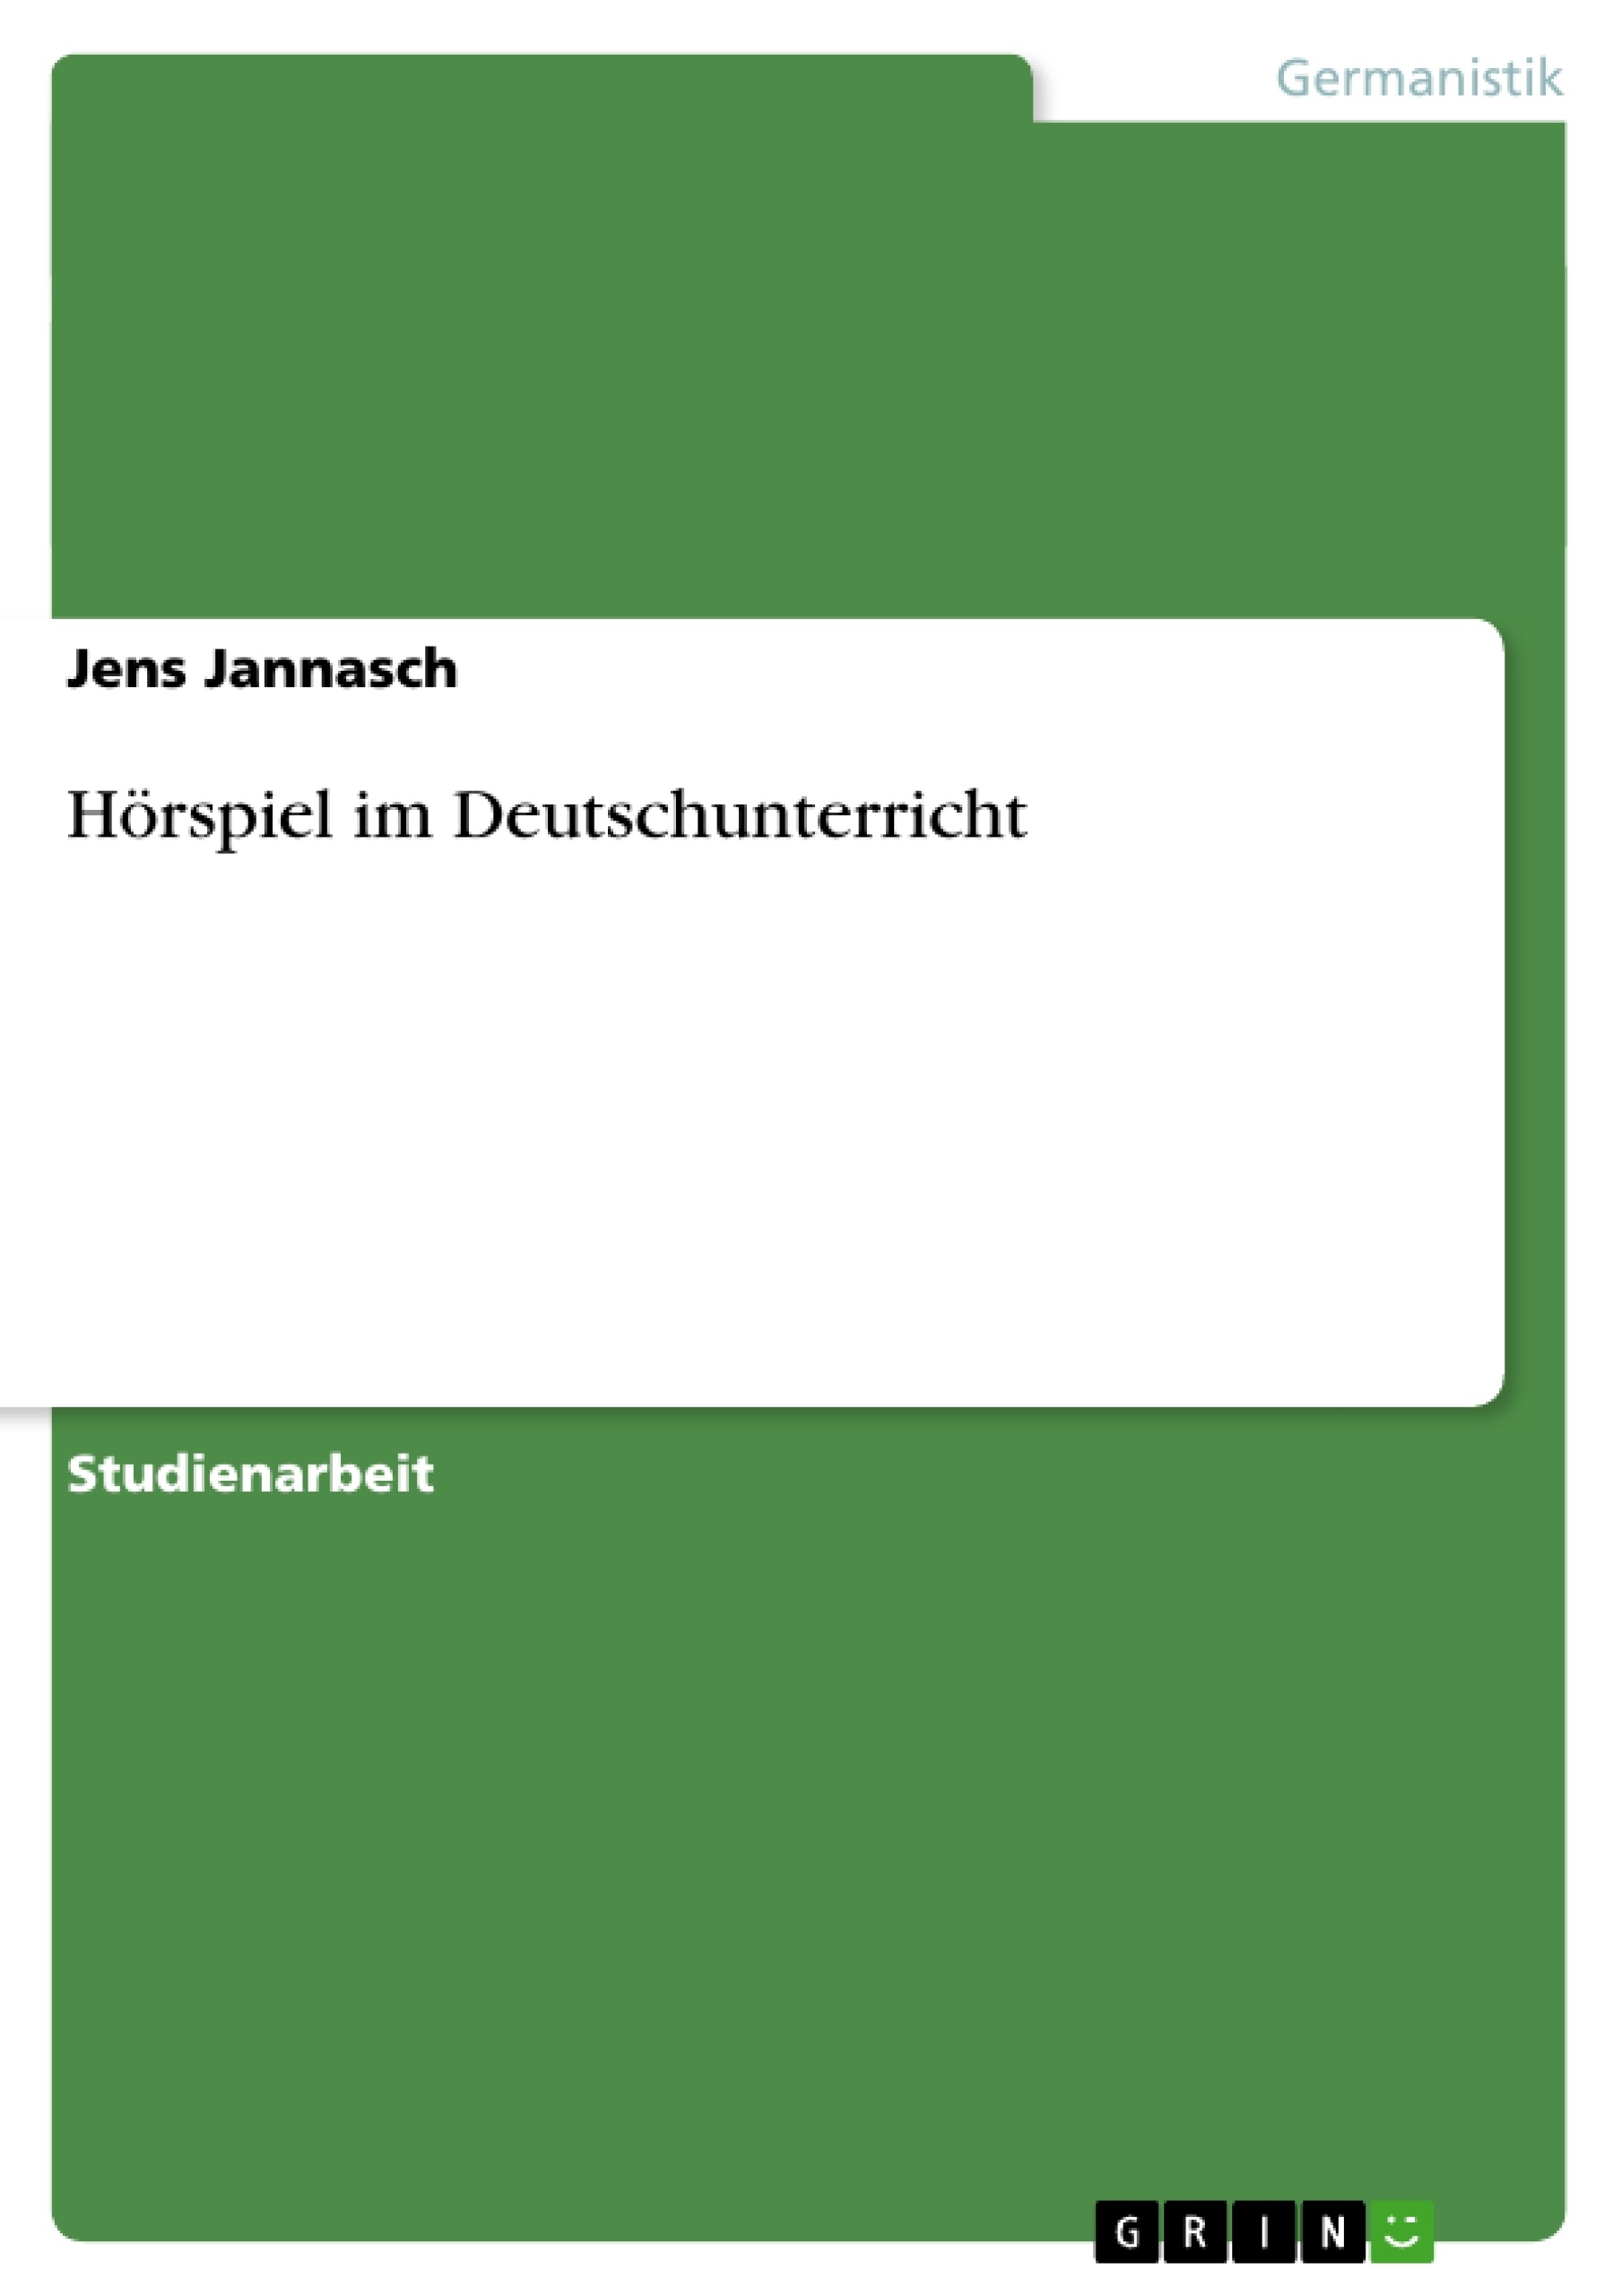 Título: Hörspiel im Deutschunterricht